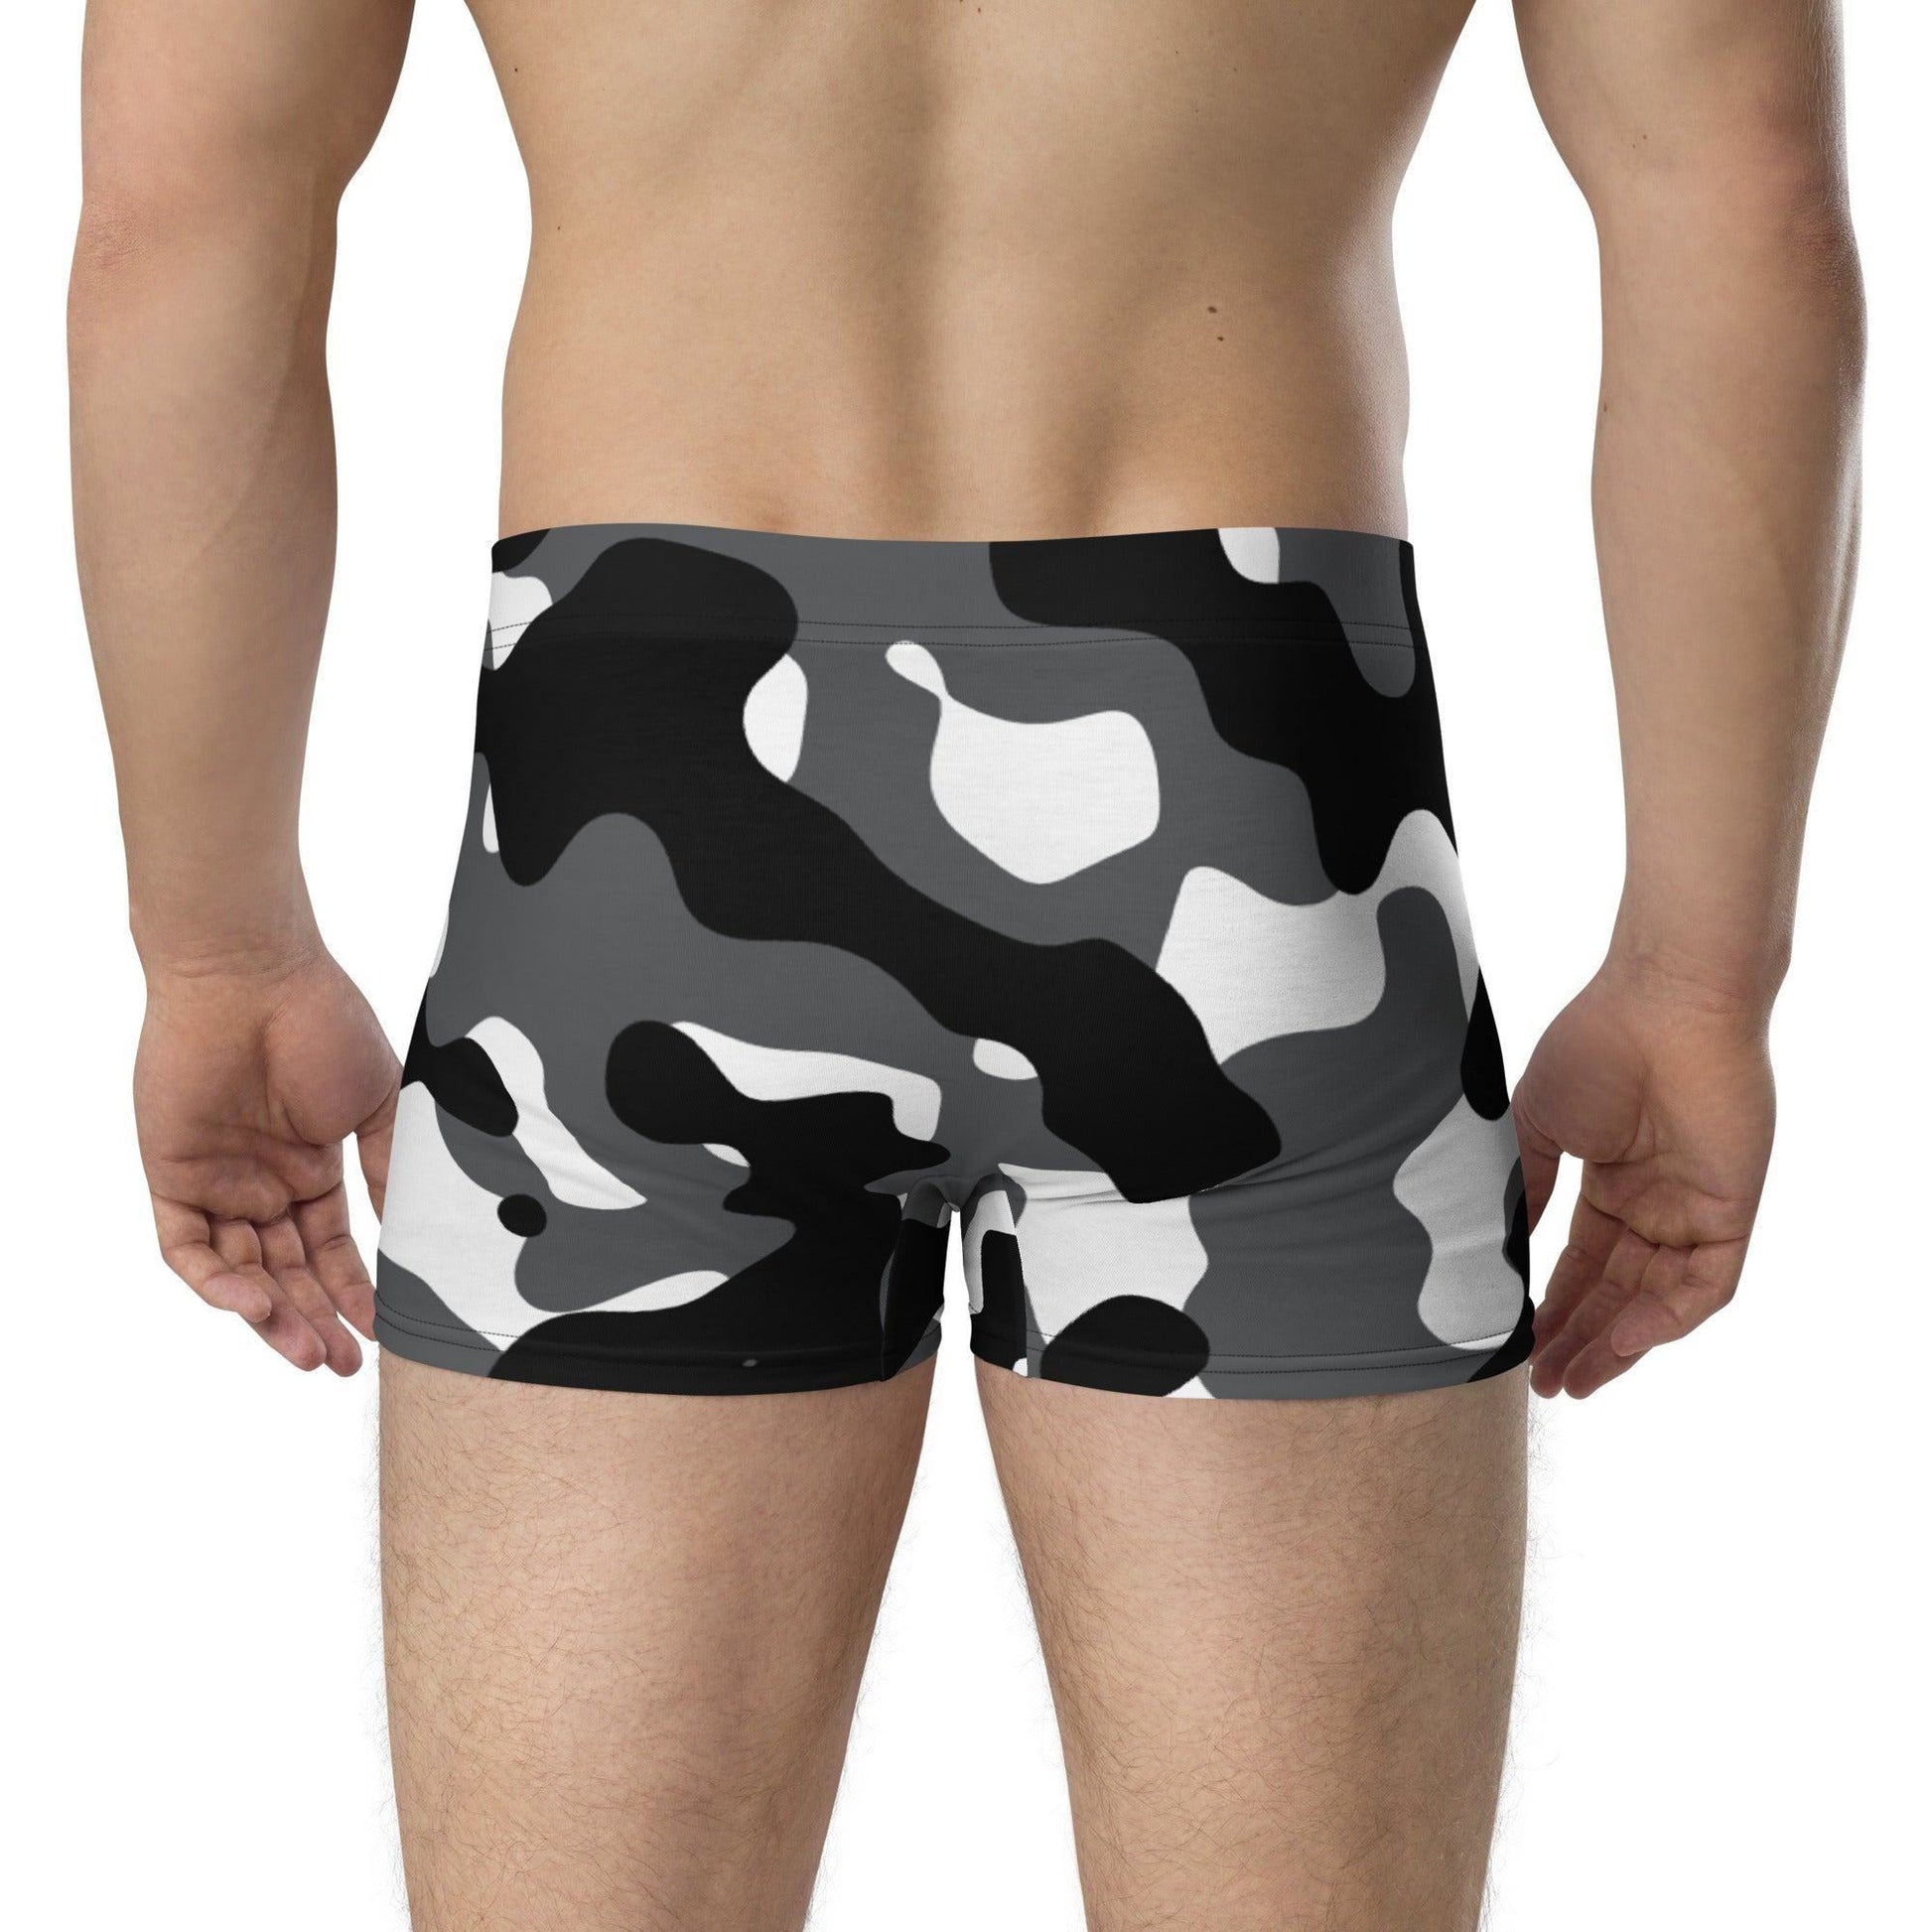 Schwarz Weiss Grau Camouflage Royal Underwear Boxershorts -- Schwarz Weiss Grau Camouflage Royal Underwear Boxershorts - undefined Boxershorts | JLR Design